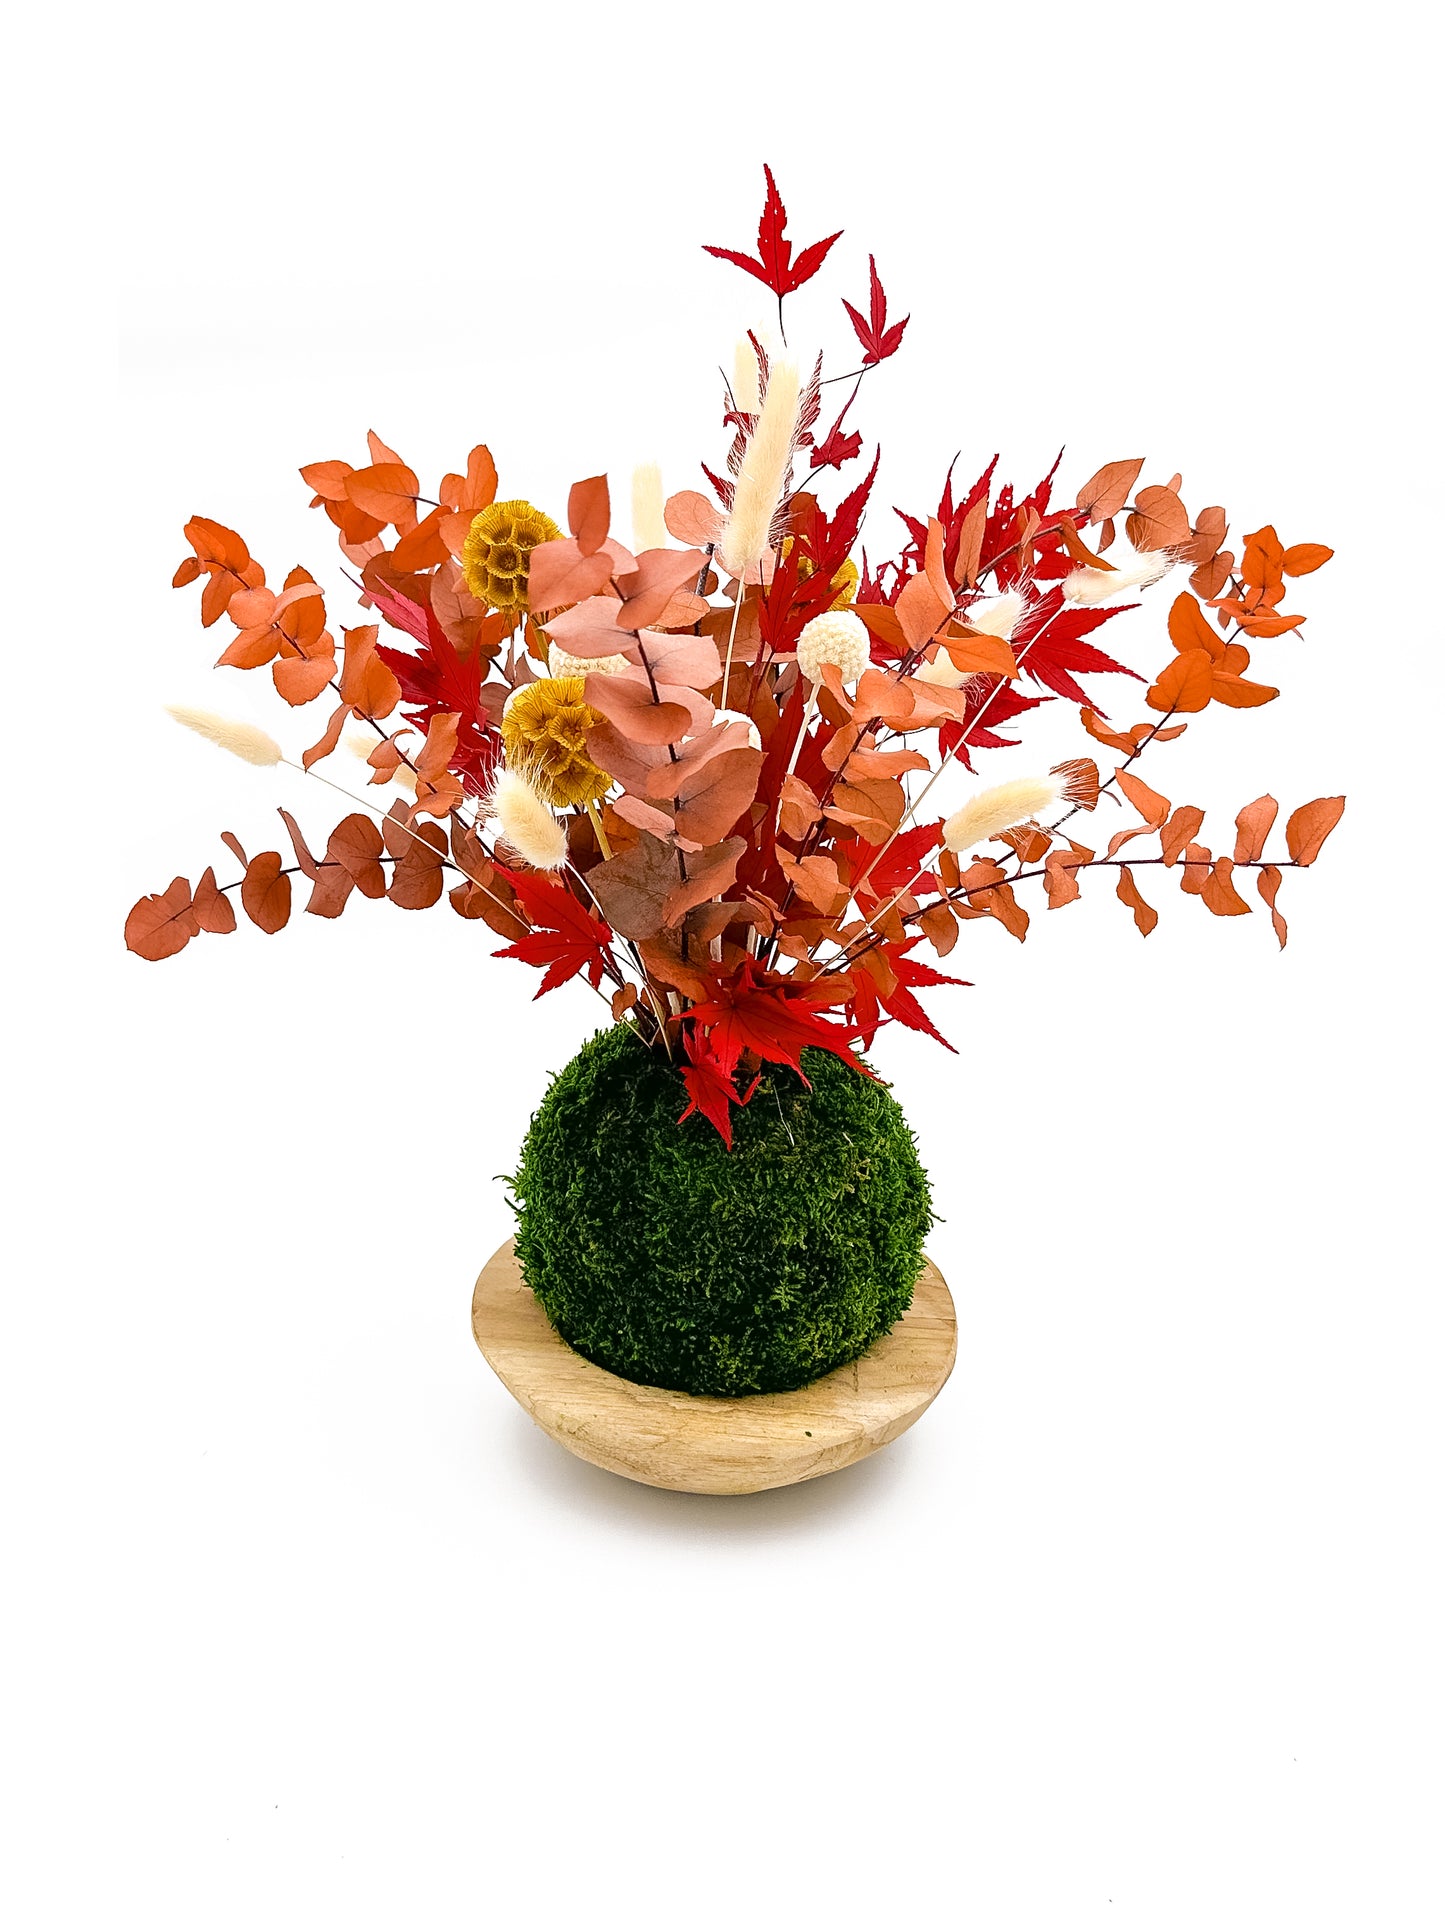 kokedama stabilisé composé de feuillage d'eucalyptus orangé, d'erable du japon rouge, de fleurs scabieuses jaunes et de lagarus sec